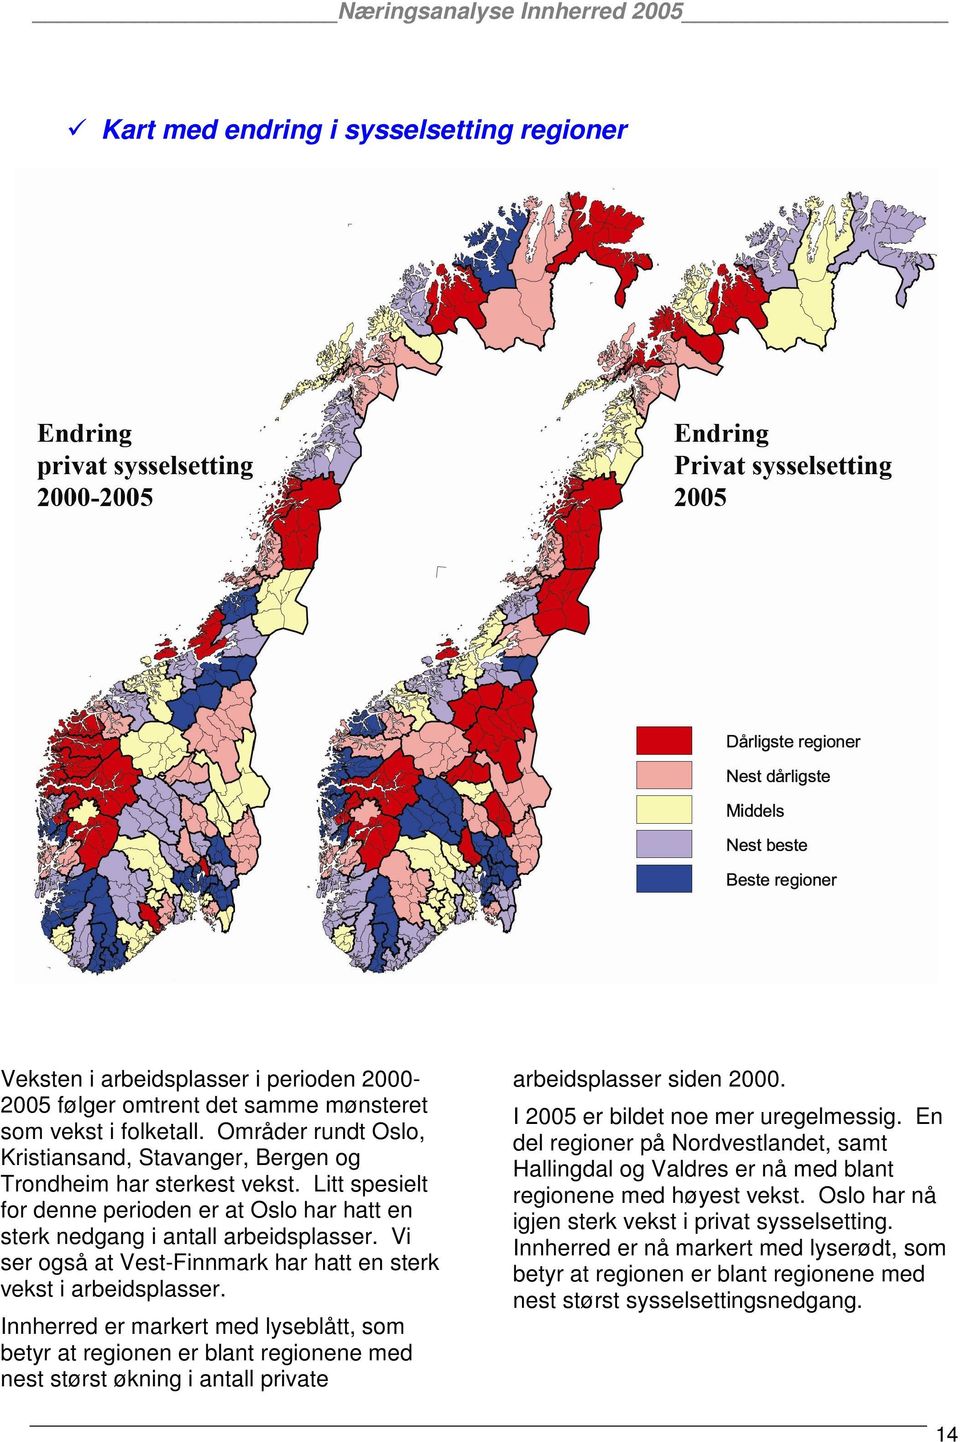 Vi ser også at Vest-Finnmark har hatt en sterk vekst i arbeidsplasser.